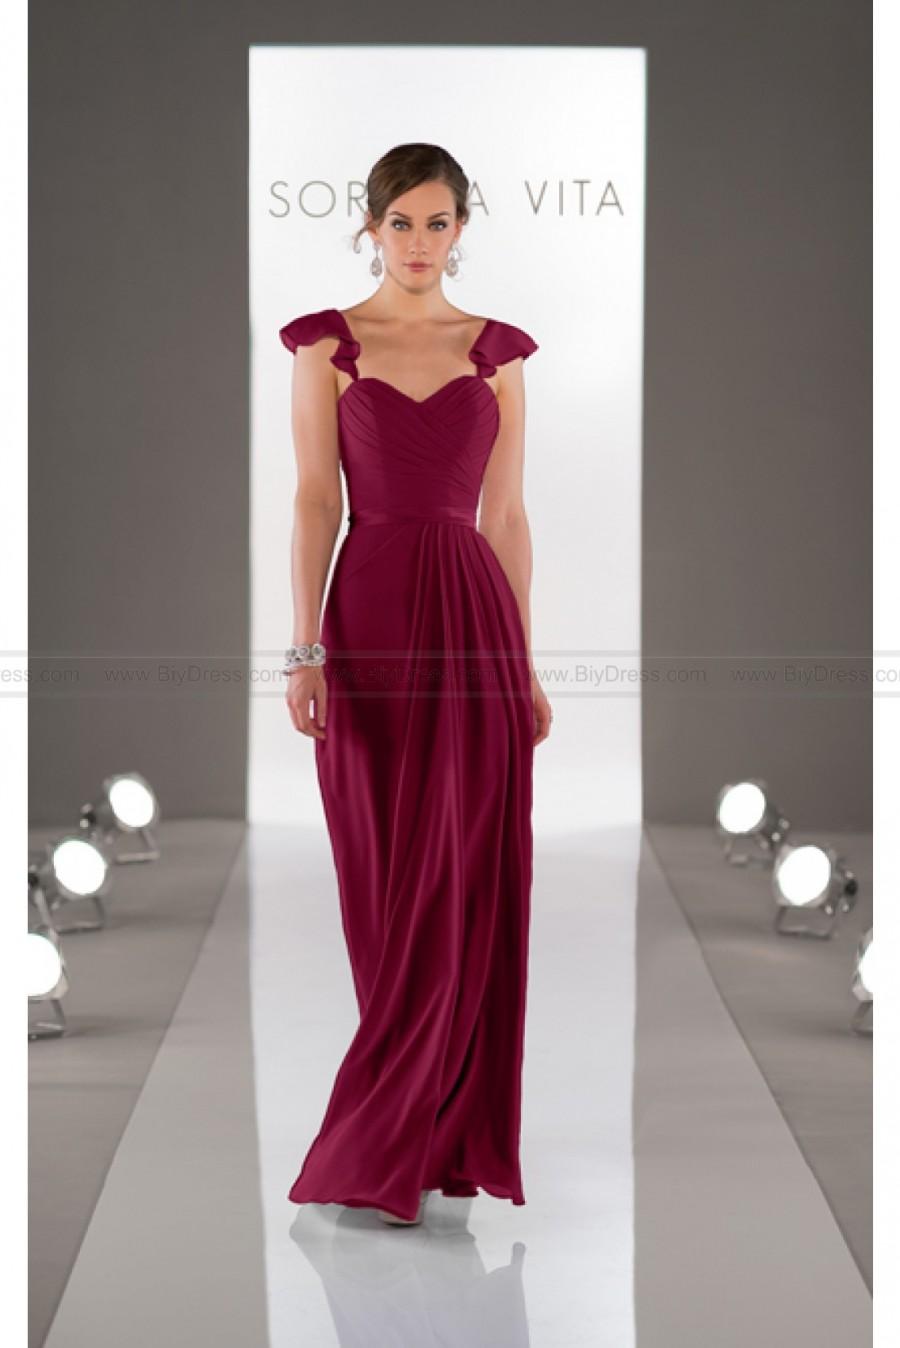 زفاف - Sorella Vita Chiffon Bridesmaid Dress Style 8446